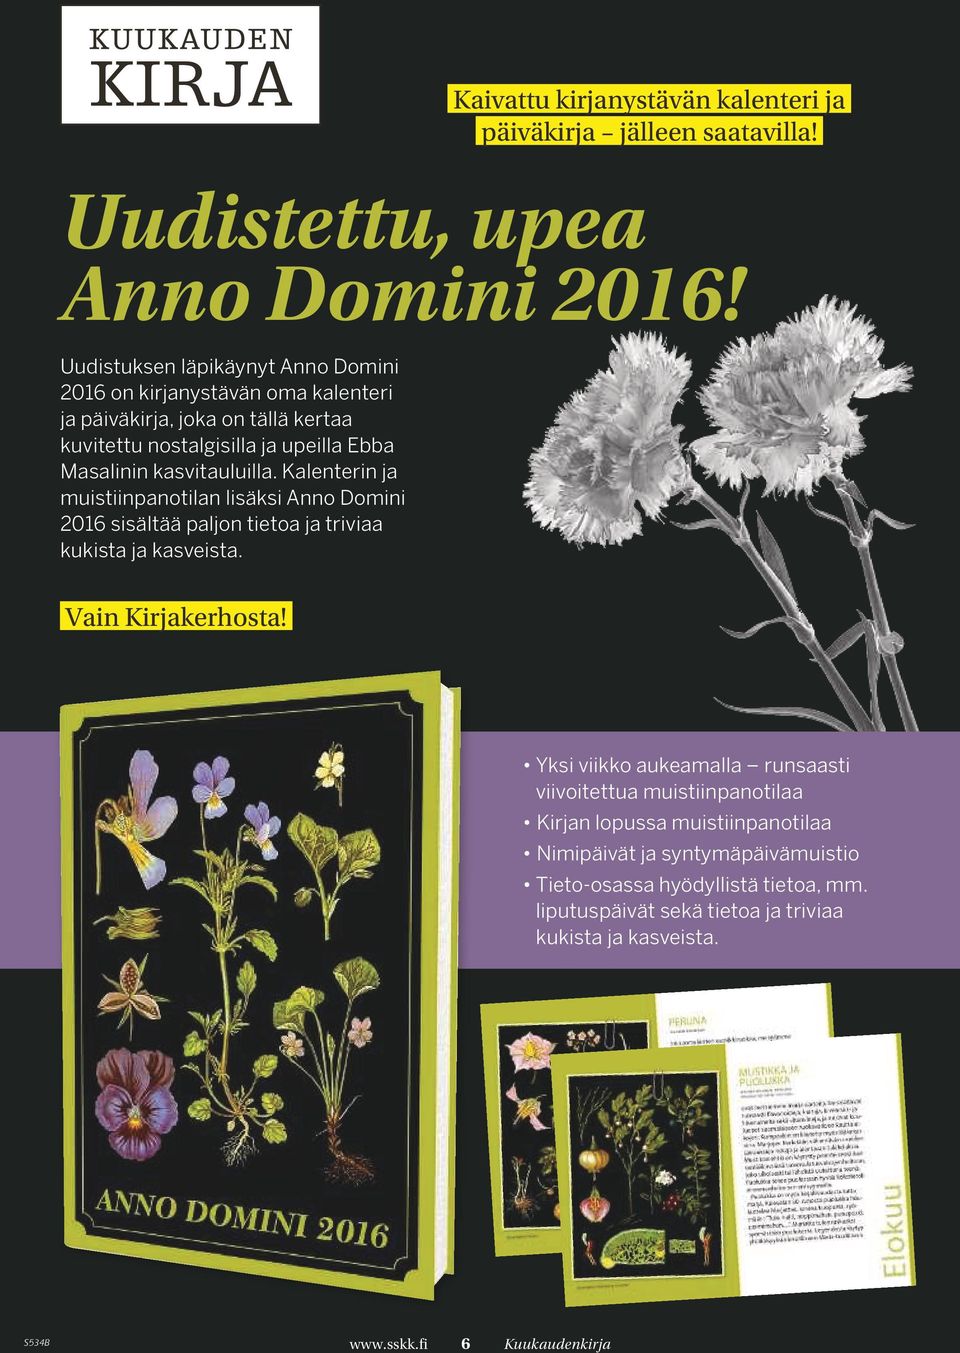 kasvitauluilla. Kalenterin ja muistiinpanotilan lisäksi Anno Domini 2016 sisältää paljon tietoa ja triviaa kukista ja kasveista. Vain Kirjakerhosta!